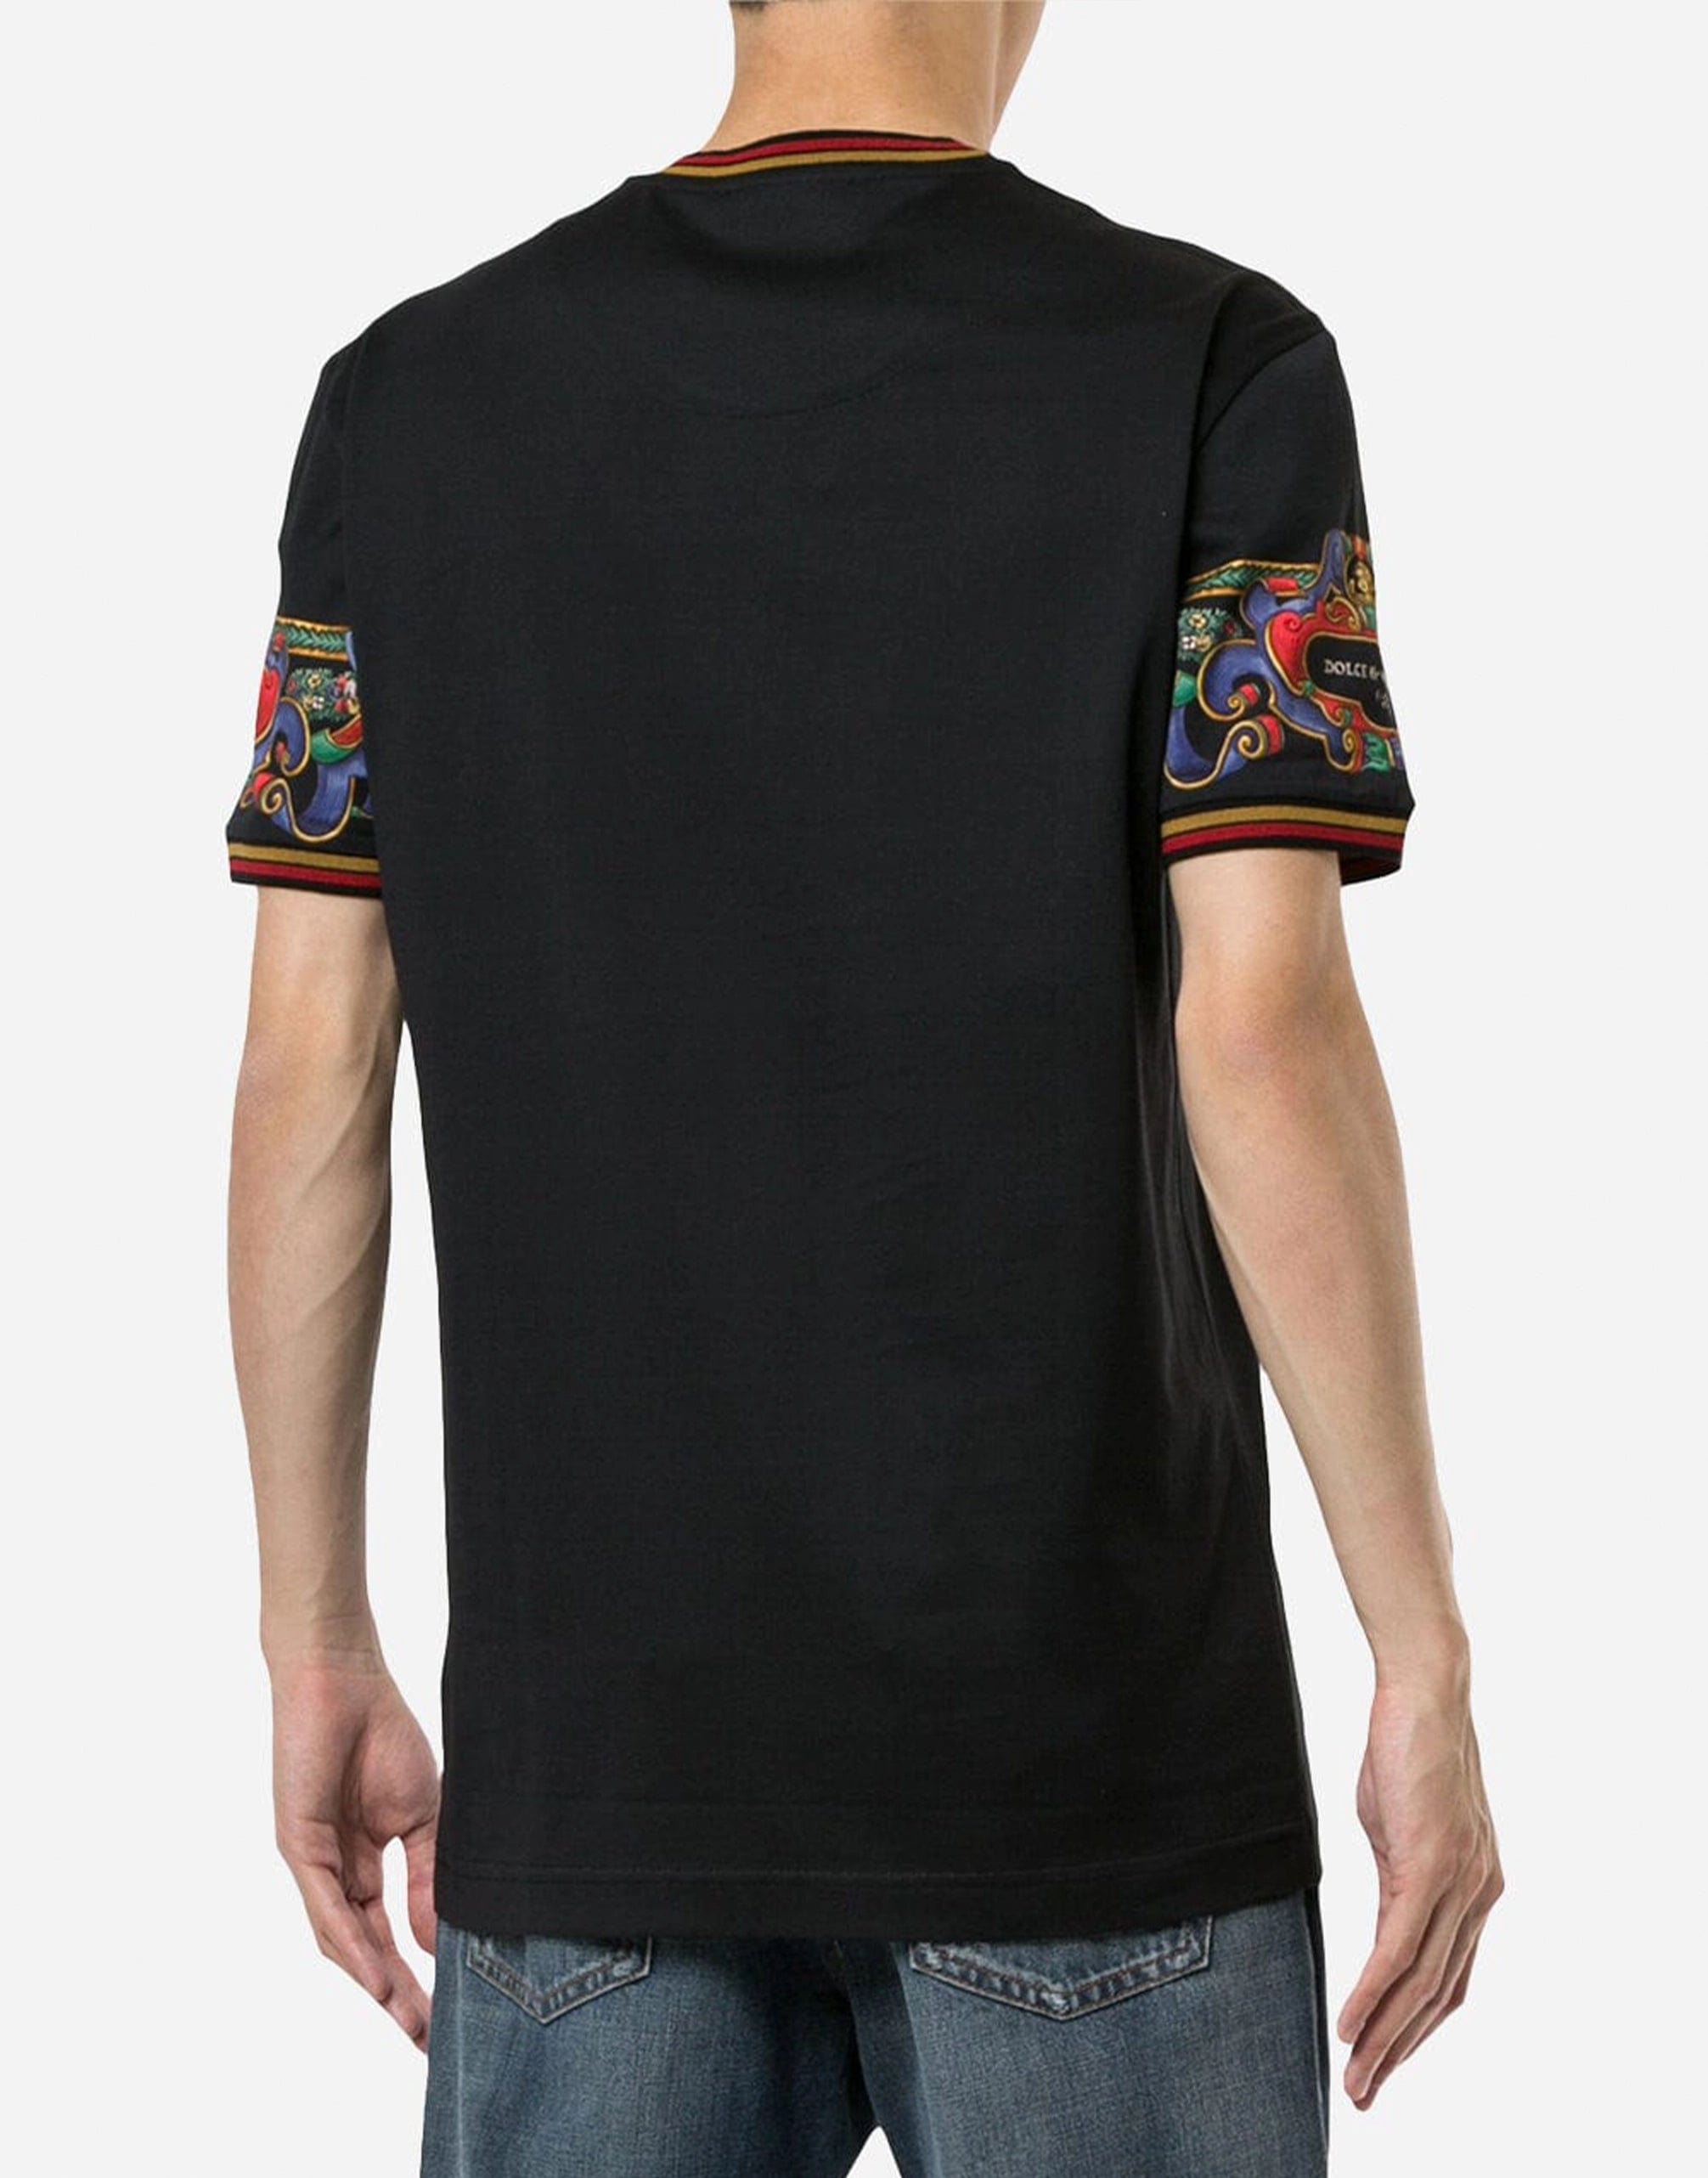 Heraldic bedrucktes Baumwoll-T-Shirt